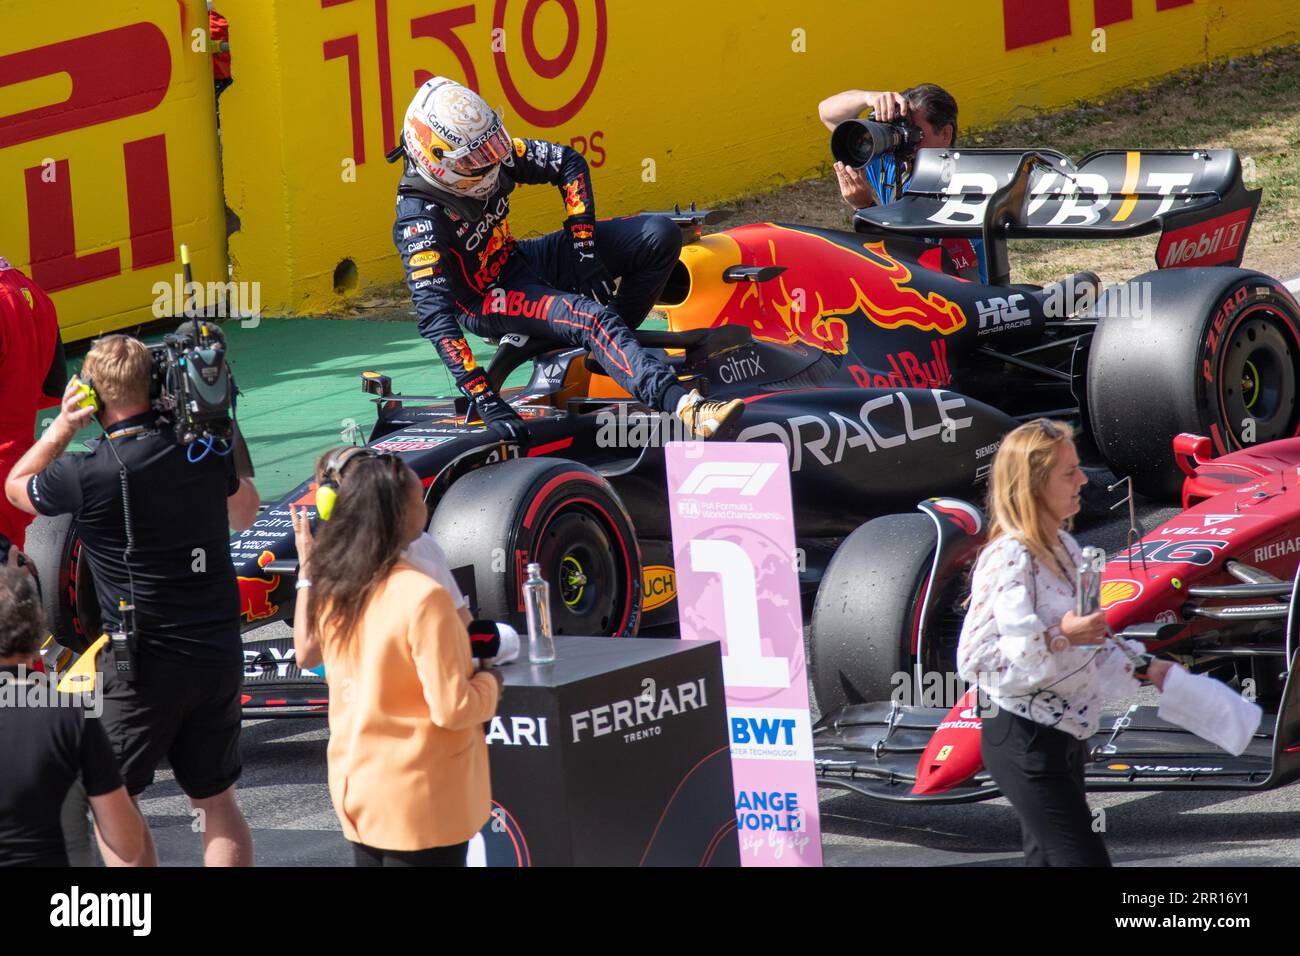 Max Verstappen salta fuori dalla sua Red Bull Racing, dopo essersi assicurato il secondo posto nella sessione di qualifica. Foto Stock